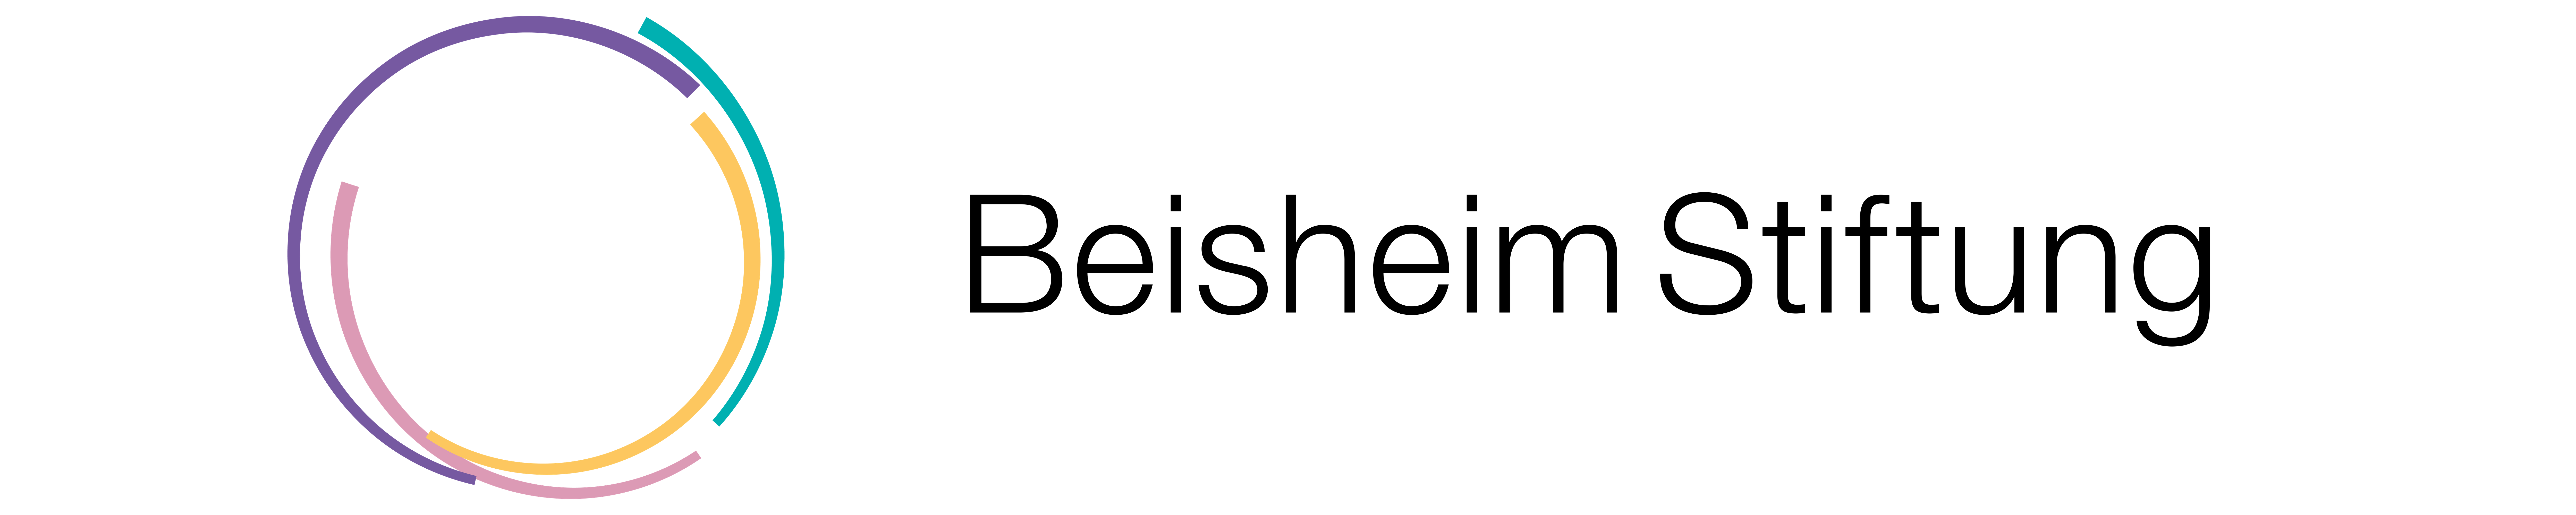 Das ist das Logo der Beisheim Stiftung